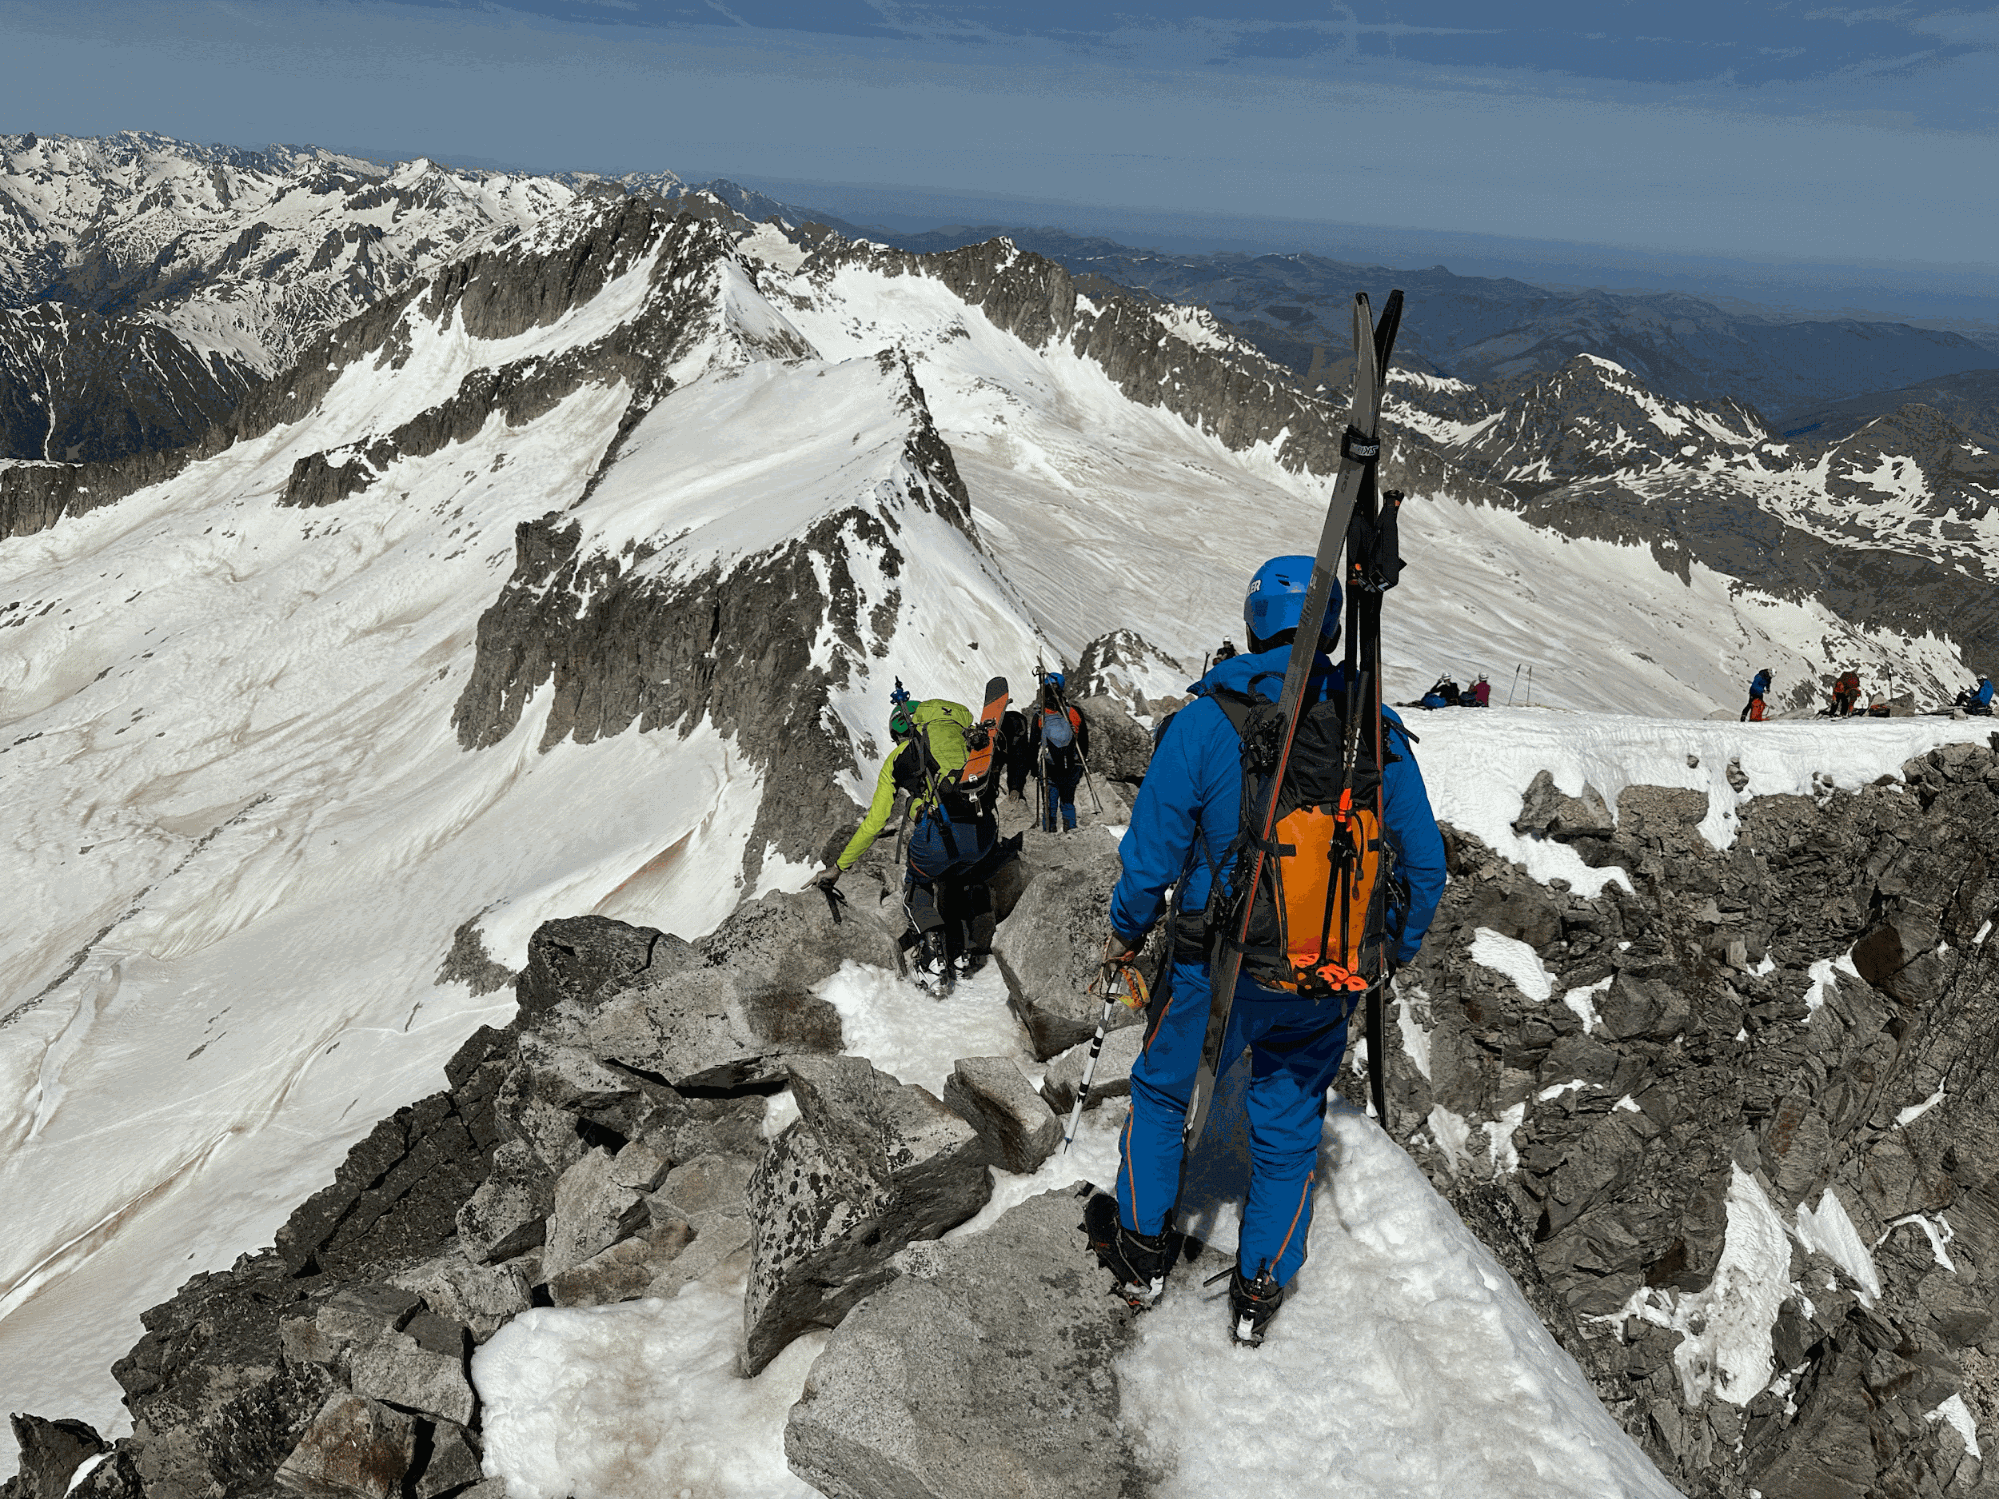 Ski randonneur avec skis dans le dos et crampons sur le Pas de Mahomet, ascension de l'Aneto, le plus haut sommet des Pyrénées en ski de randonnée